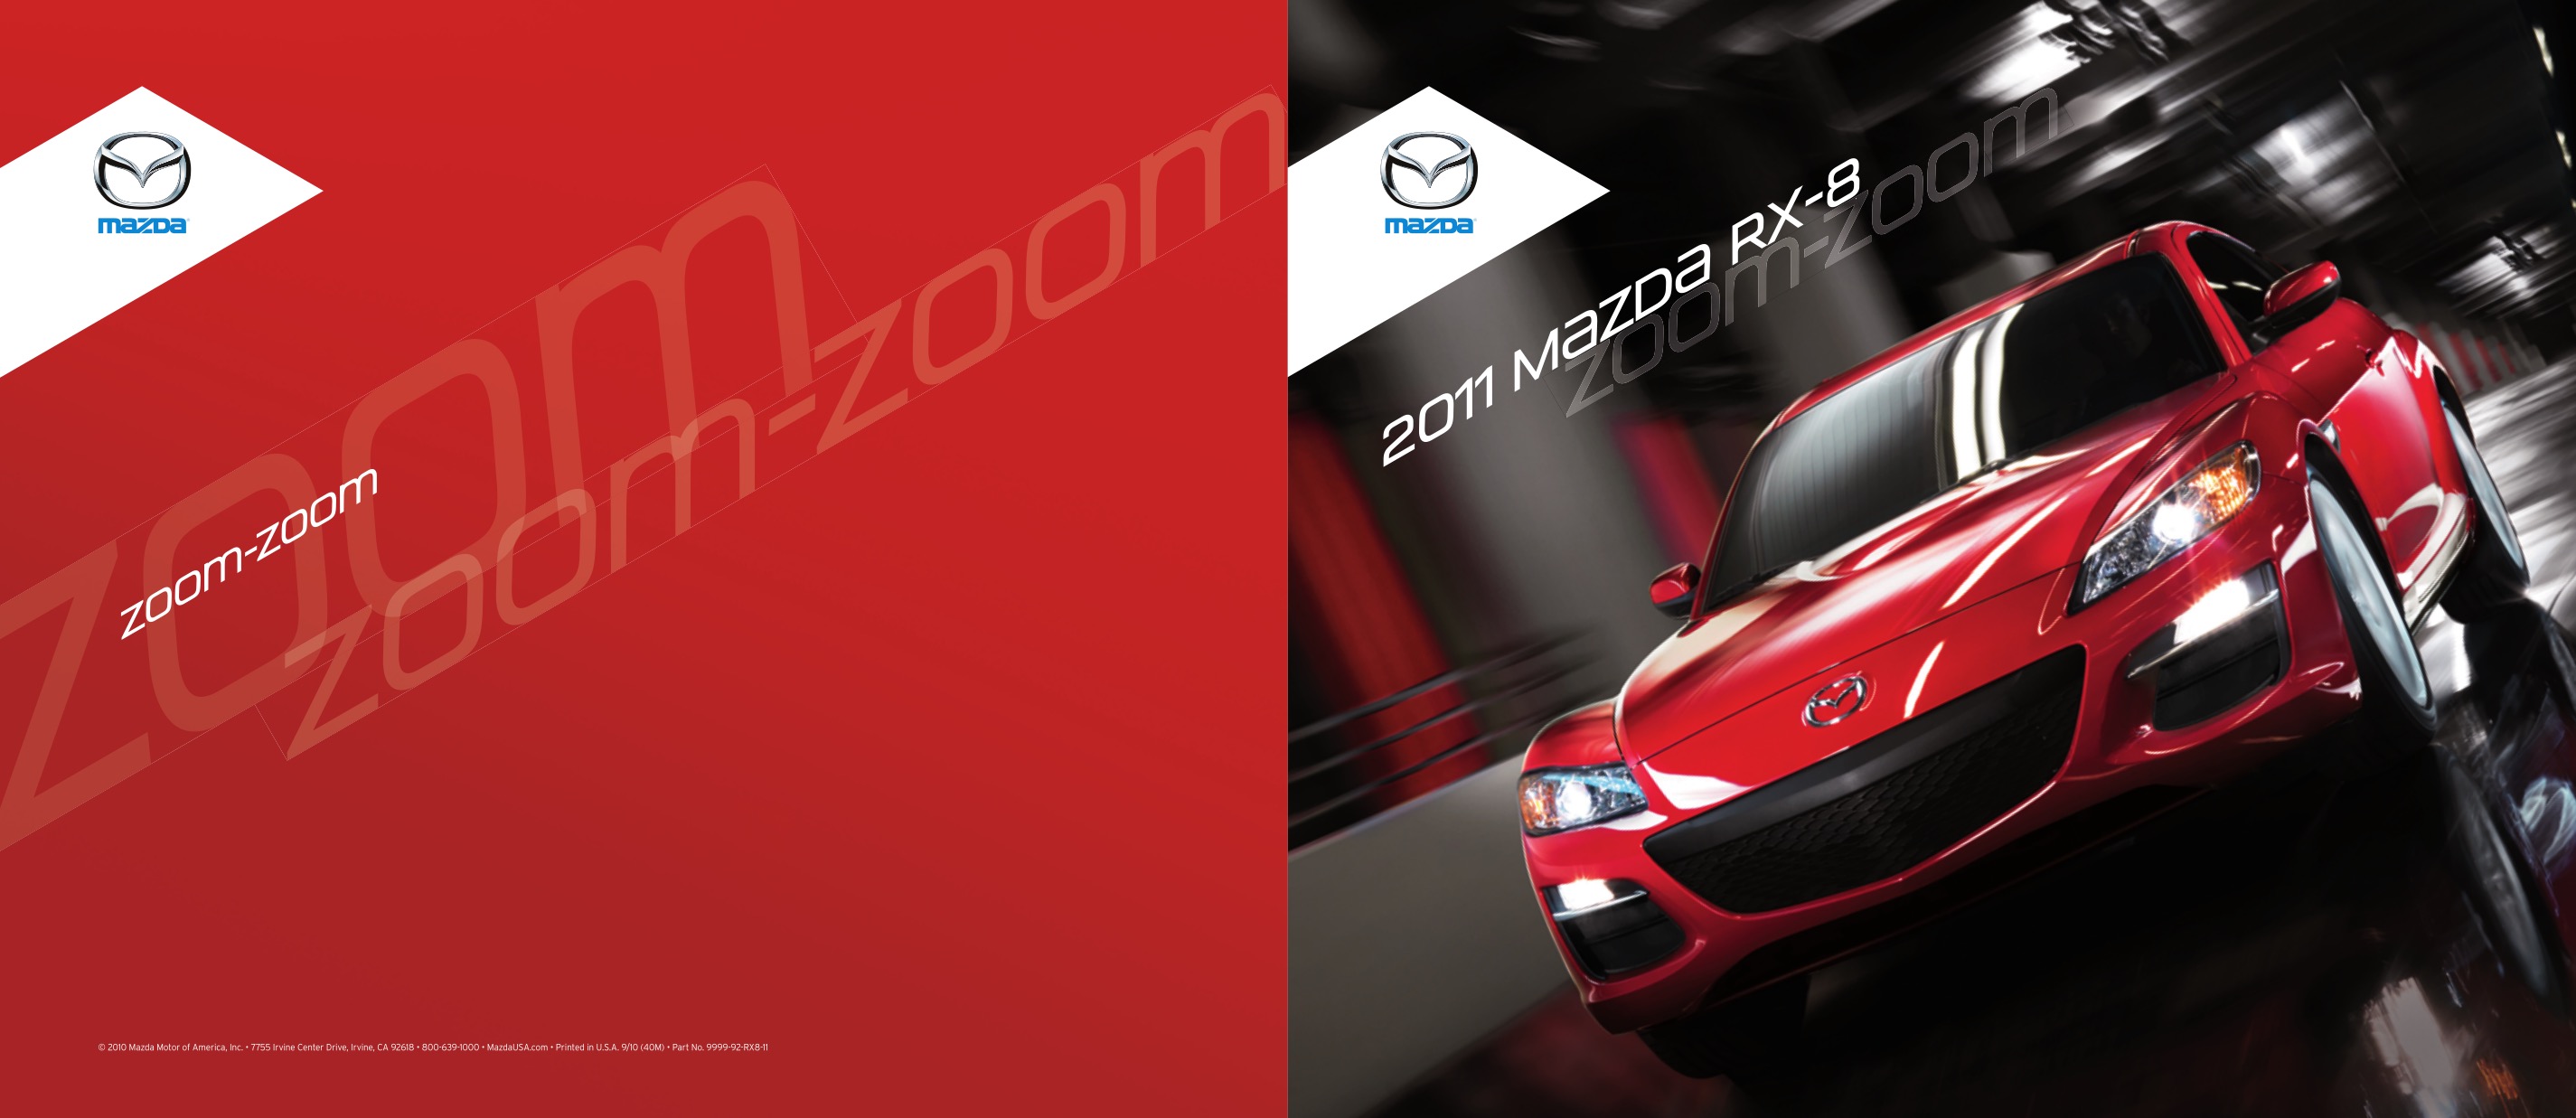 2011 Mazda RX-8 Brochure Page 3